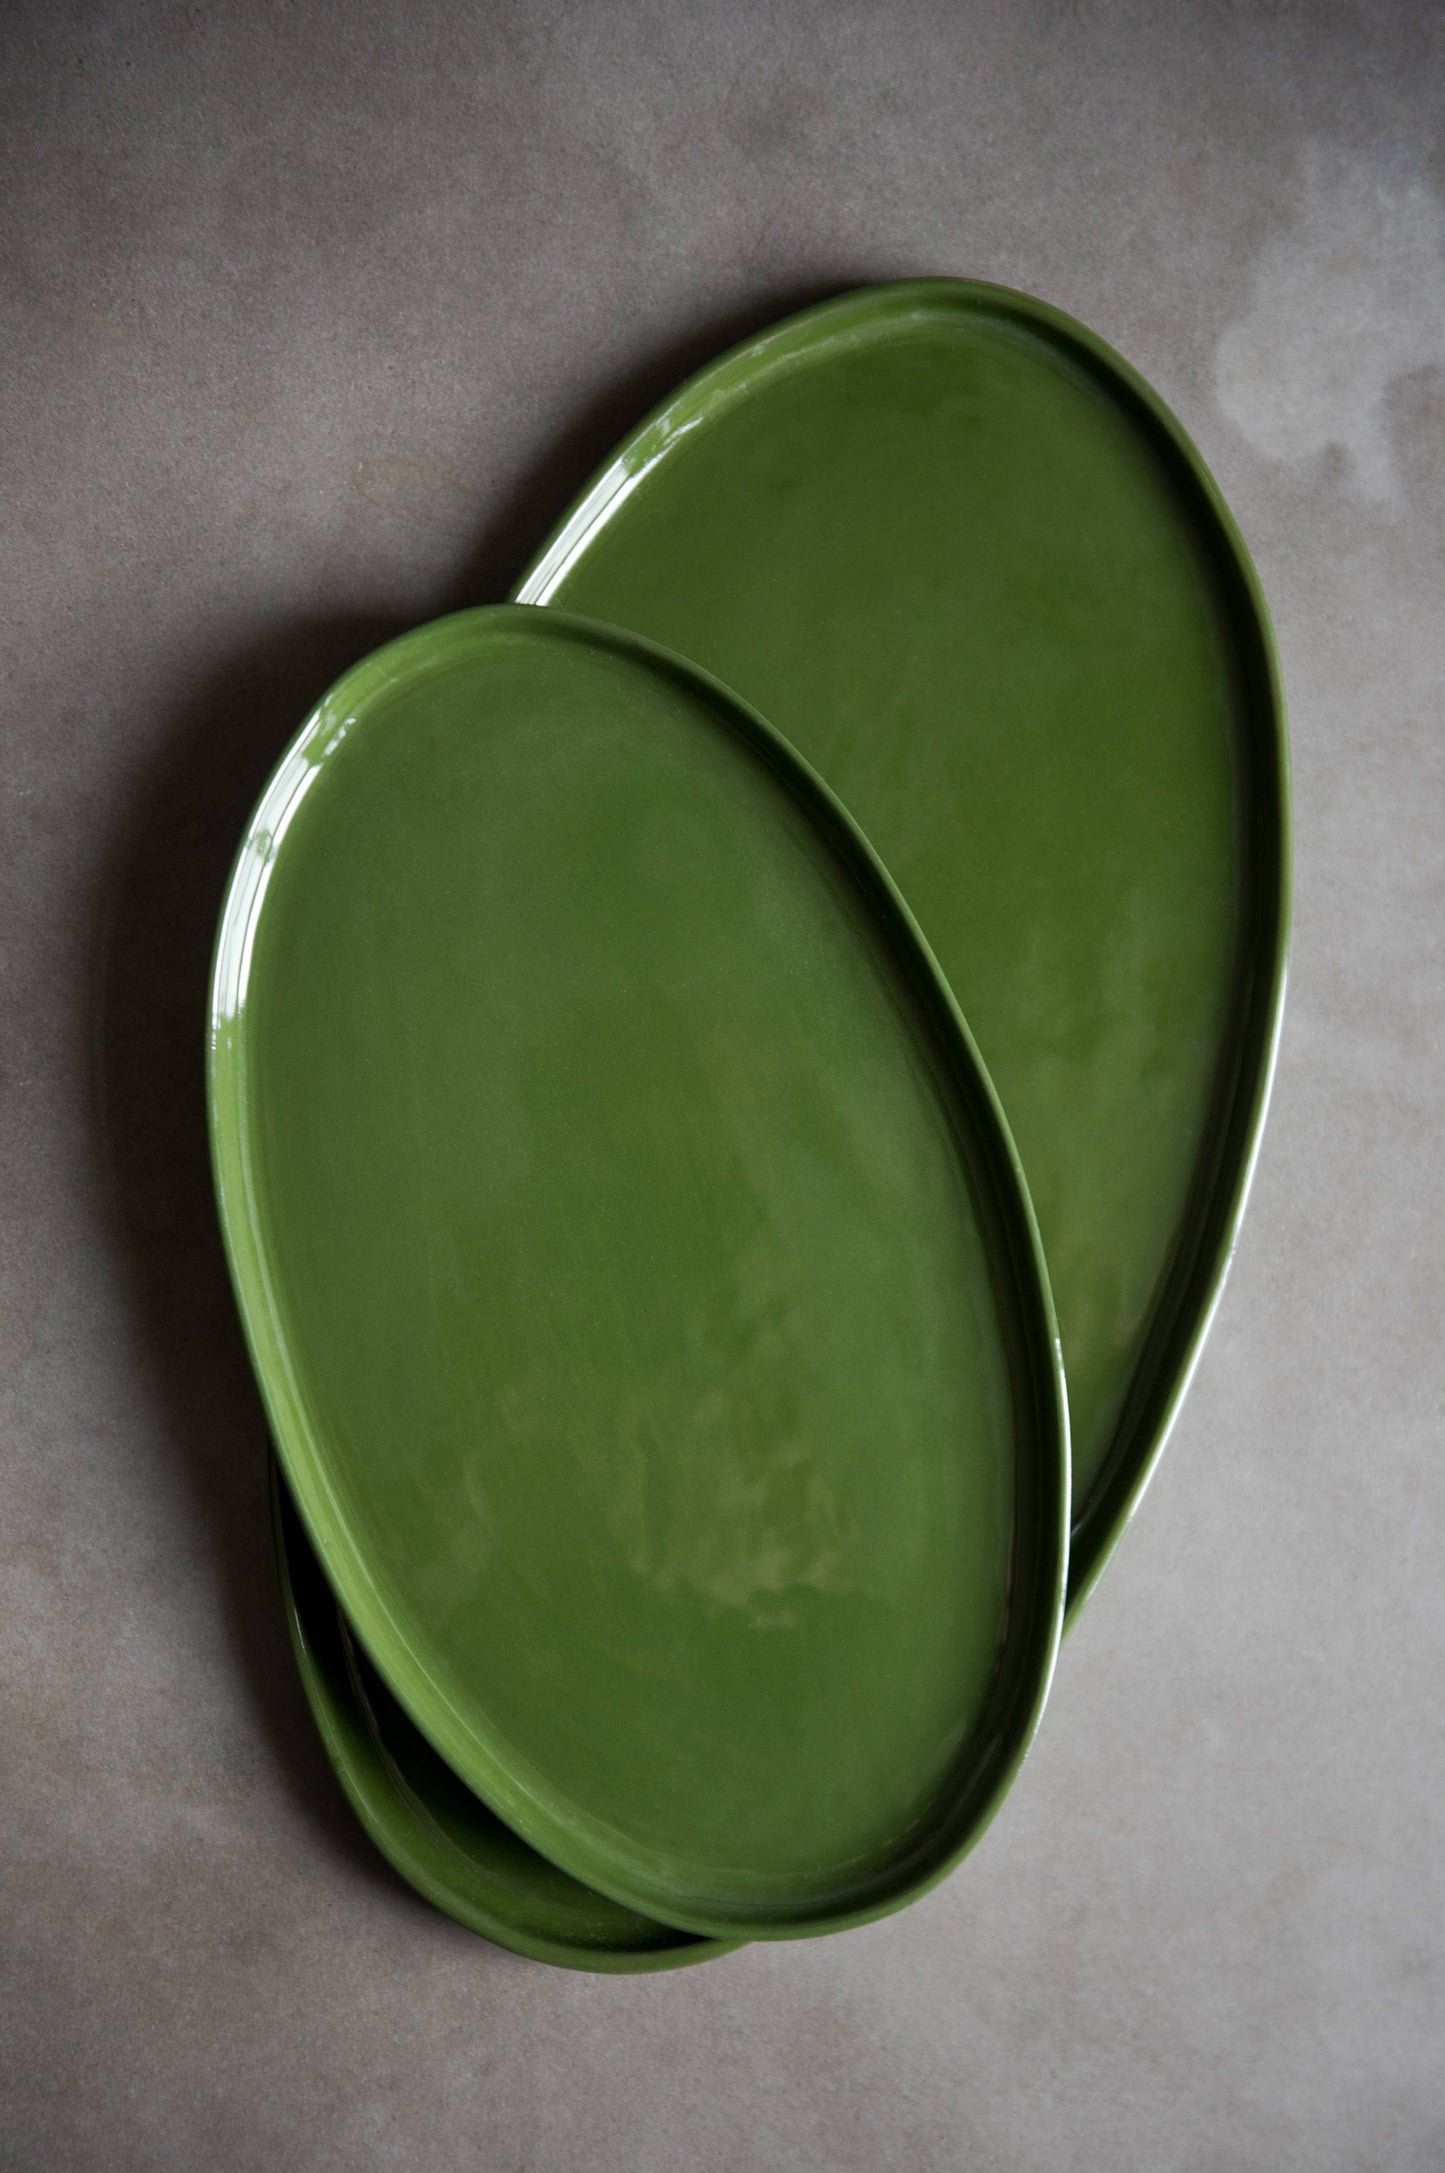 Ethical Trade Co Home Handmade Ukrainian Porcelain Serving Platter